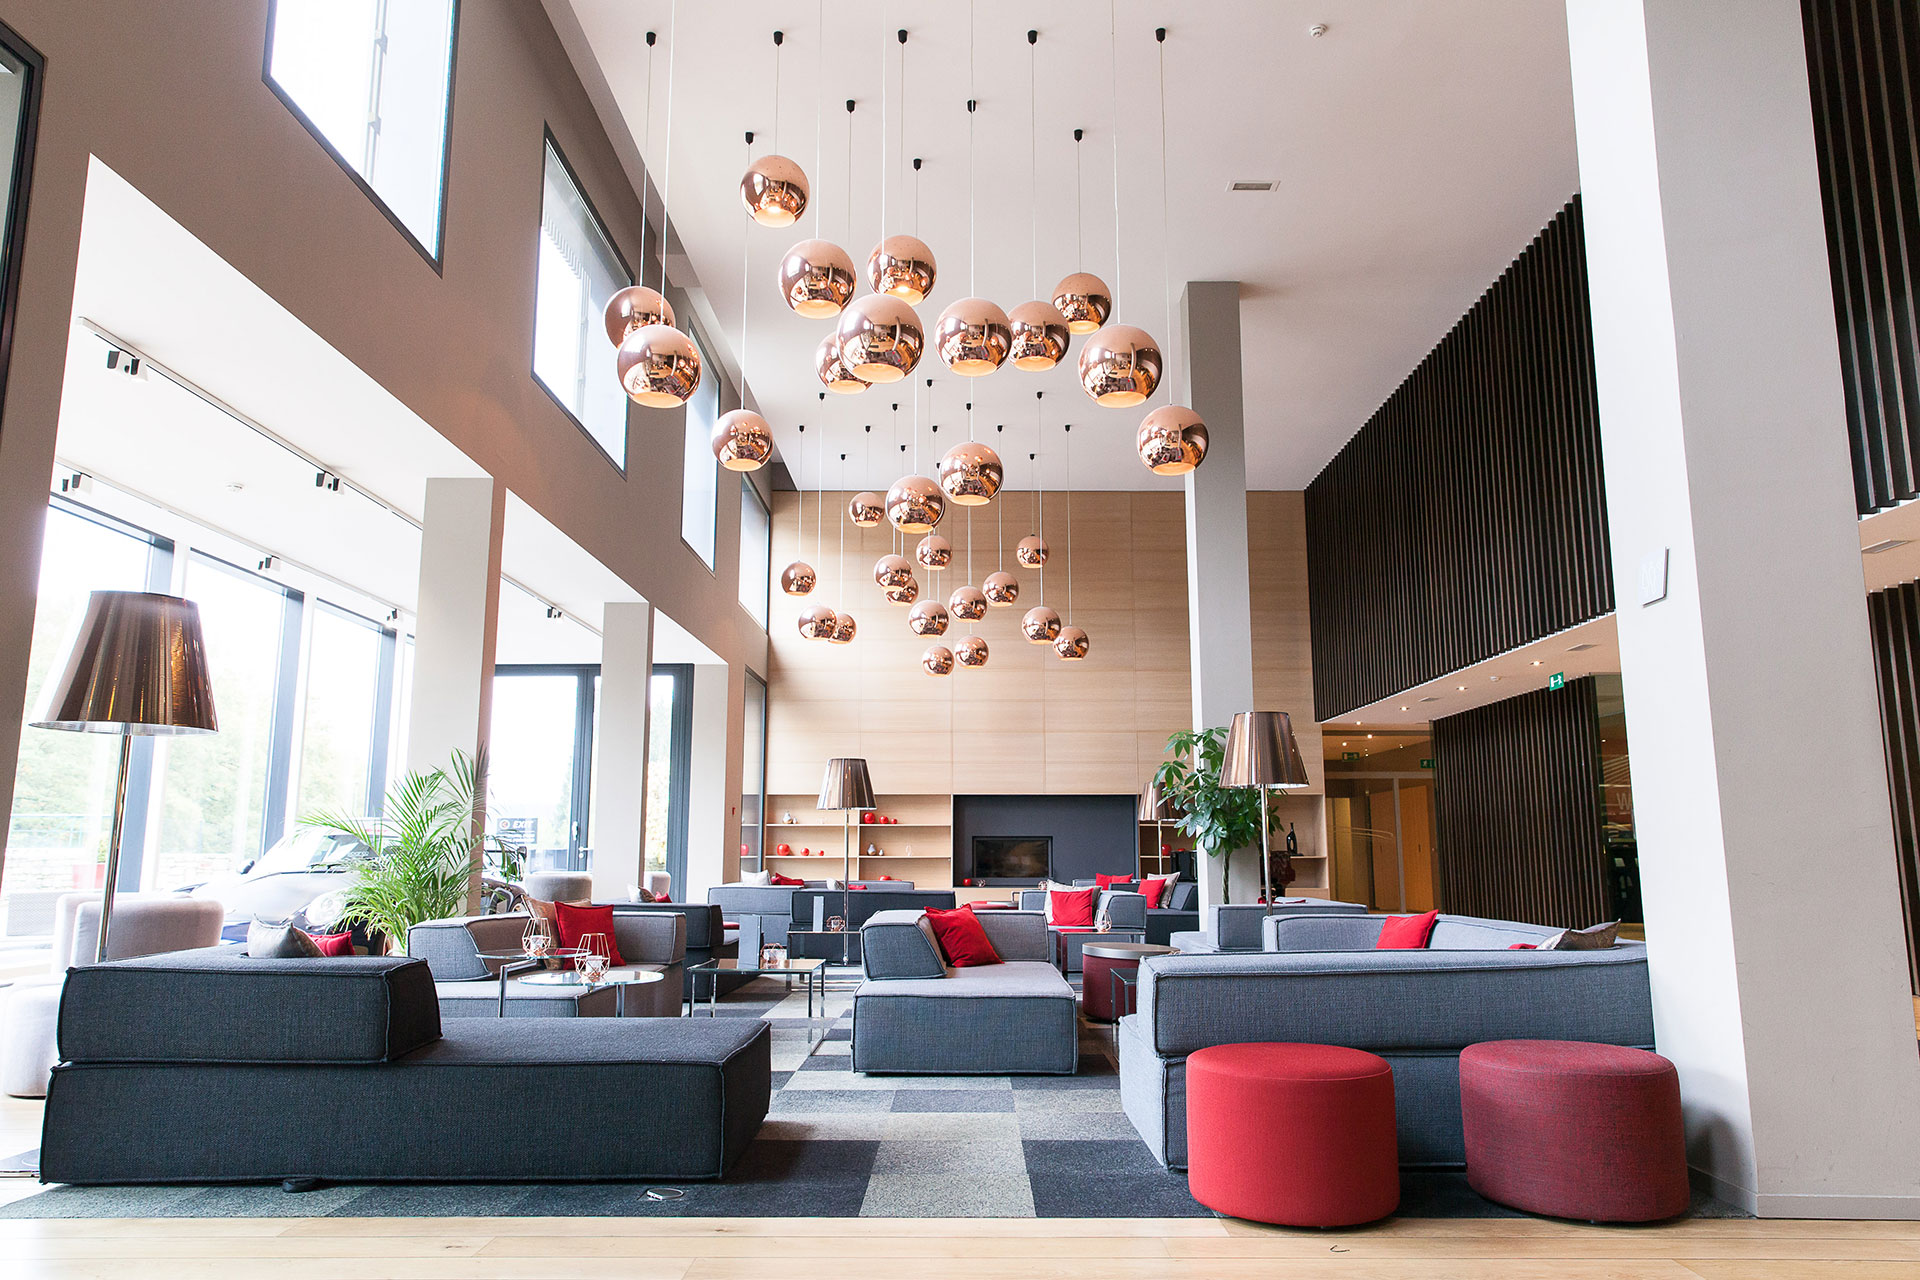 Lobby d'hôtel avec canapé et luminaires en forme de boule